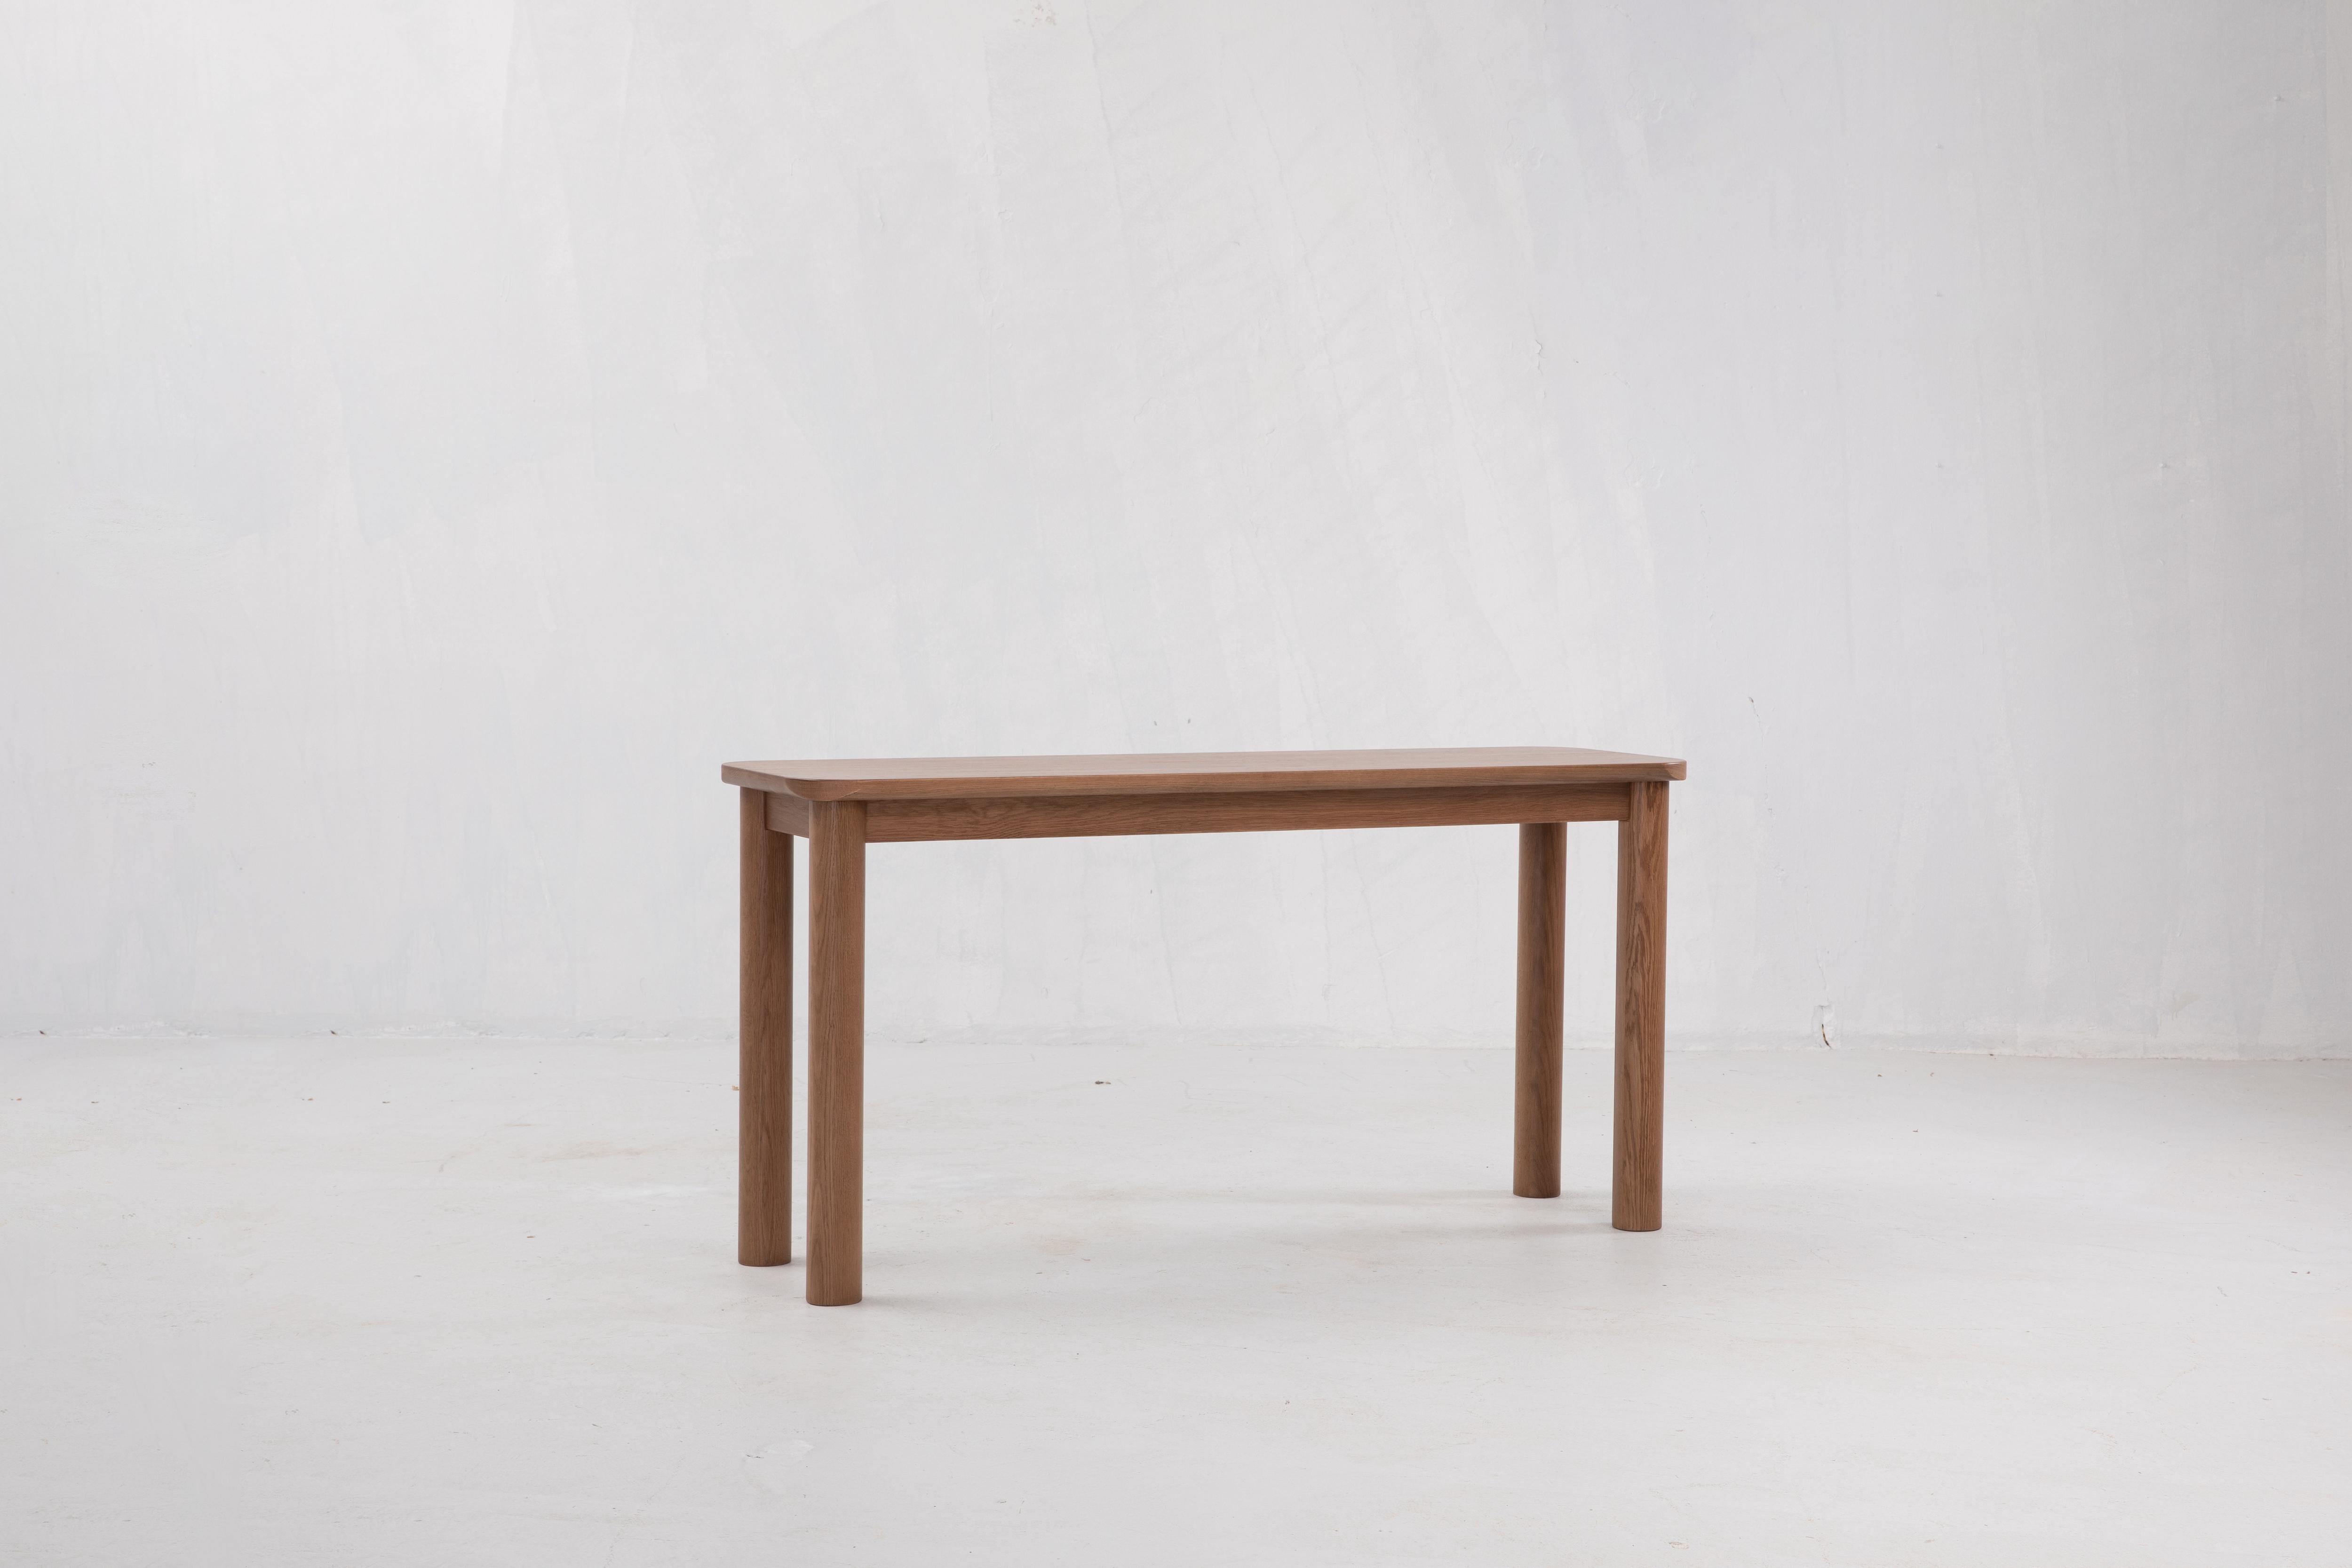 Sun at Six est un studio de conception de mobilier contemporain qui travaille avec des maîtres menuisiers chinois traditionnels pour fabriquer ses pièces à la main en utilisant la menuiserie traditionnelle. 

Un bon meuble commence par des matériaux